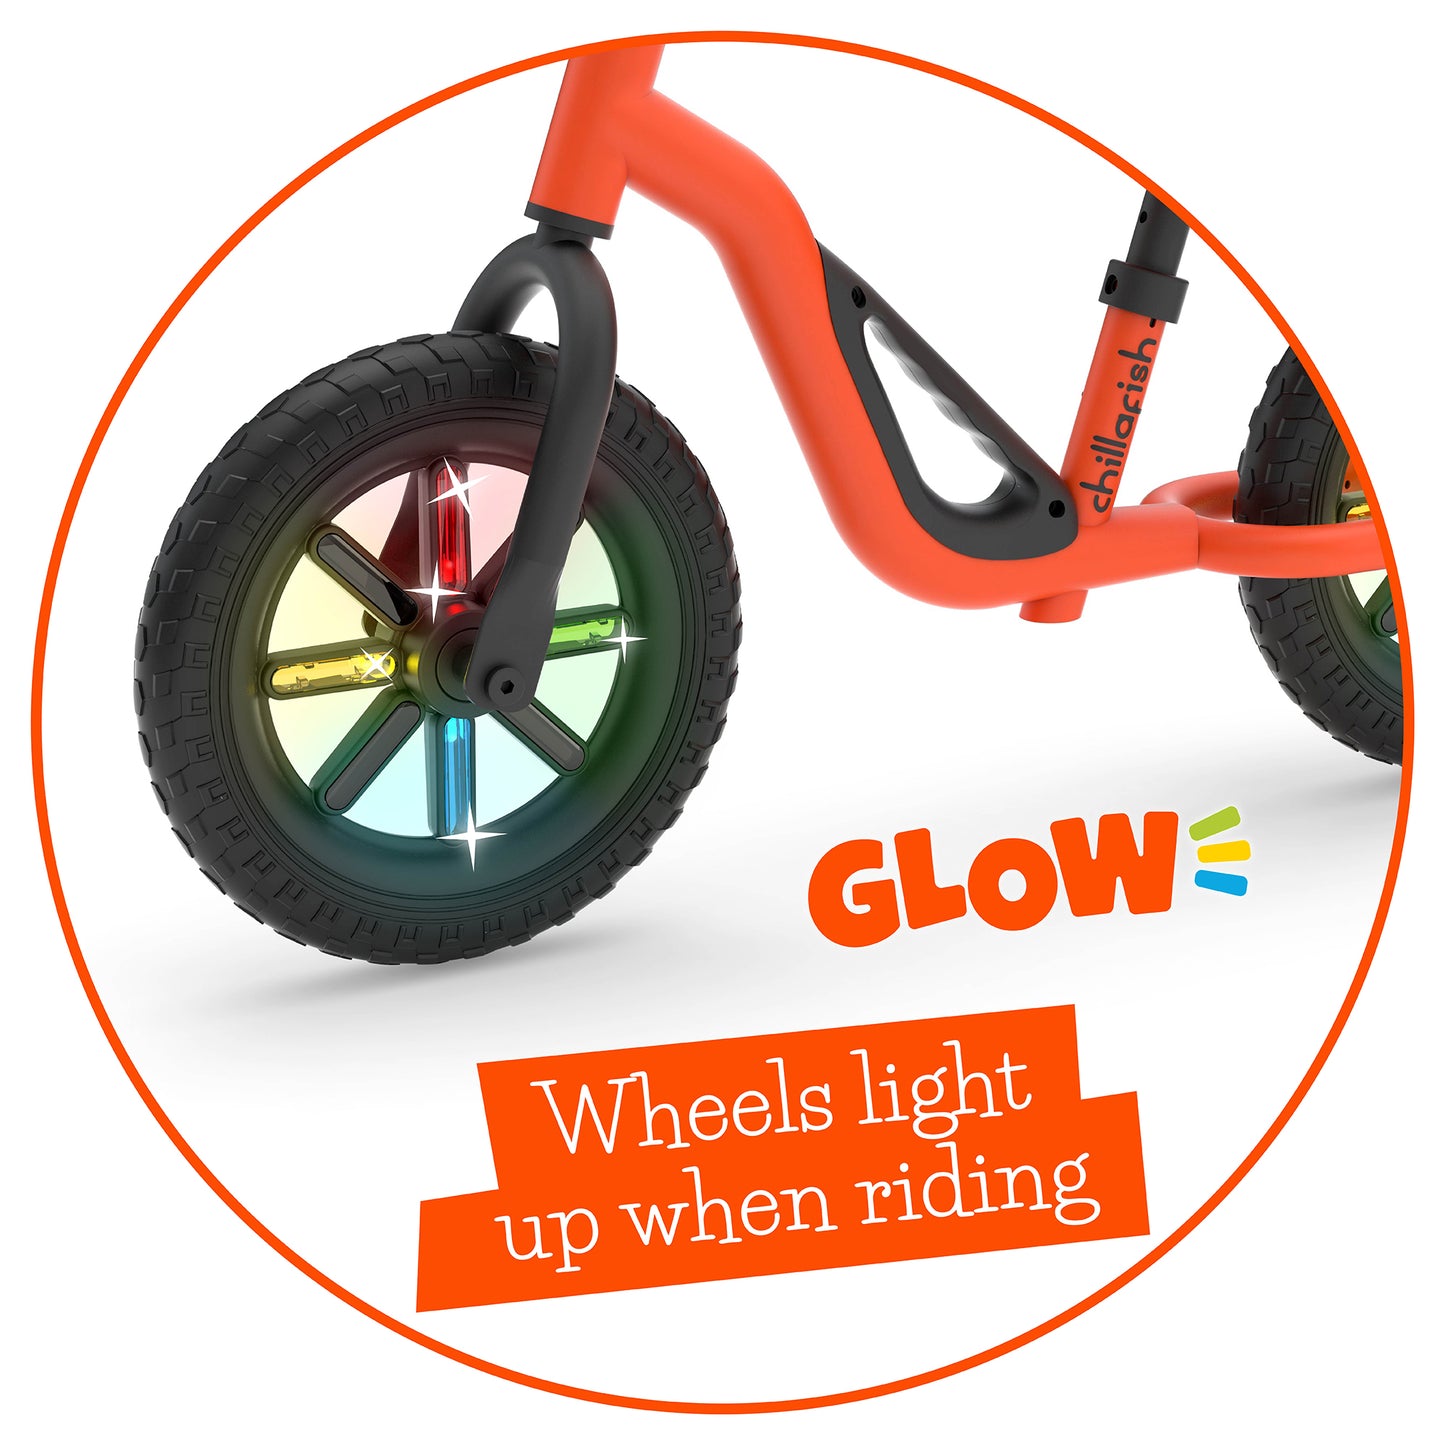 Draisienne Charlie GLOW avec des roues lumineuses LED, une poignée de transport, et des pneus de 10 pouces anti-crevaison